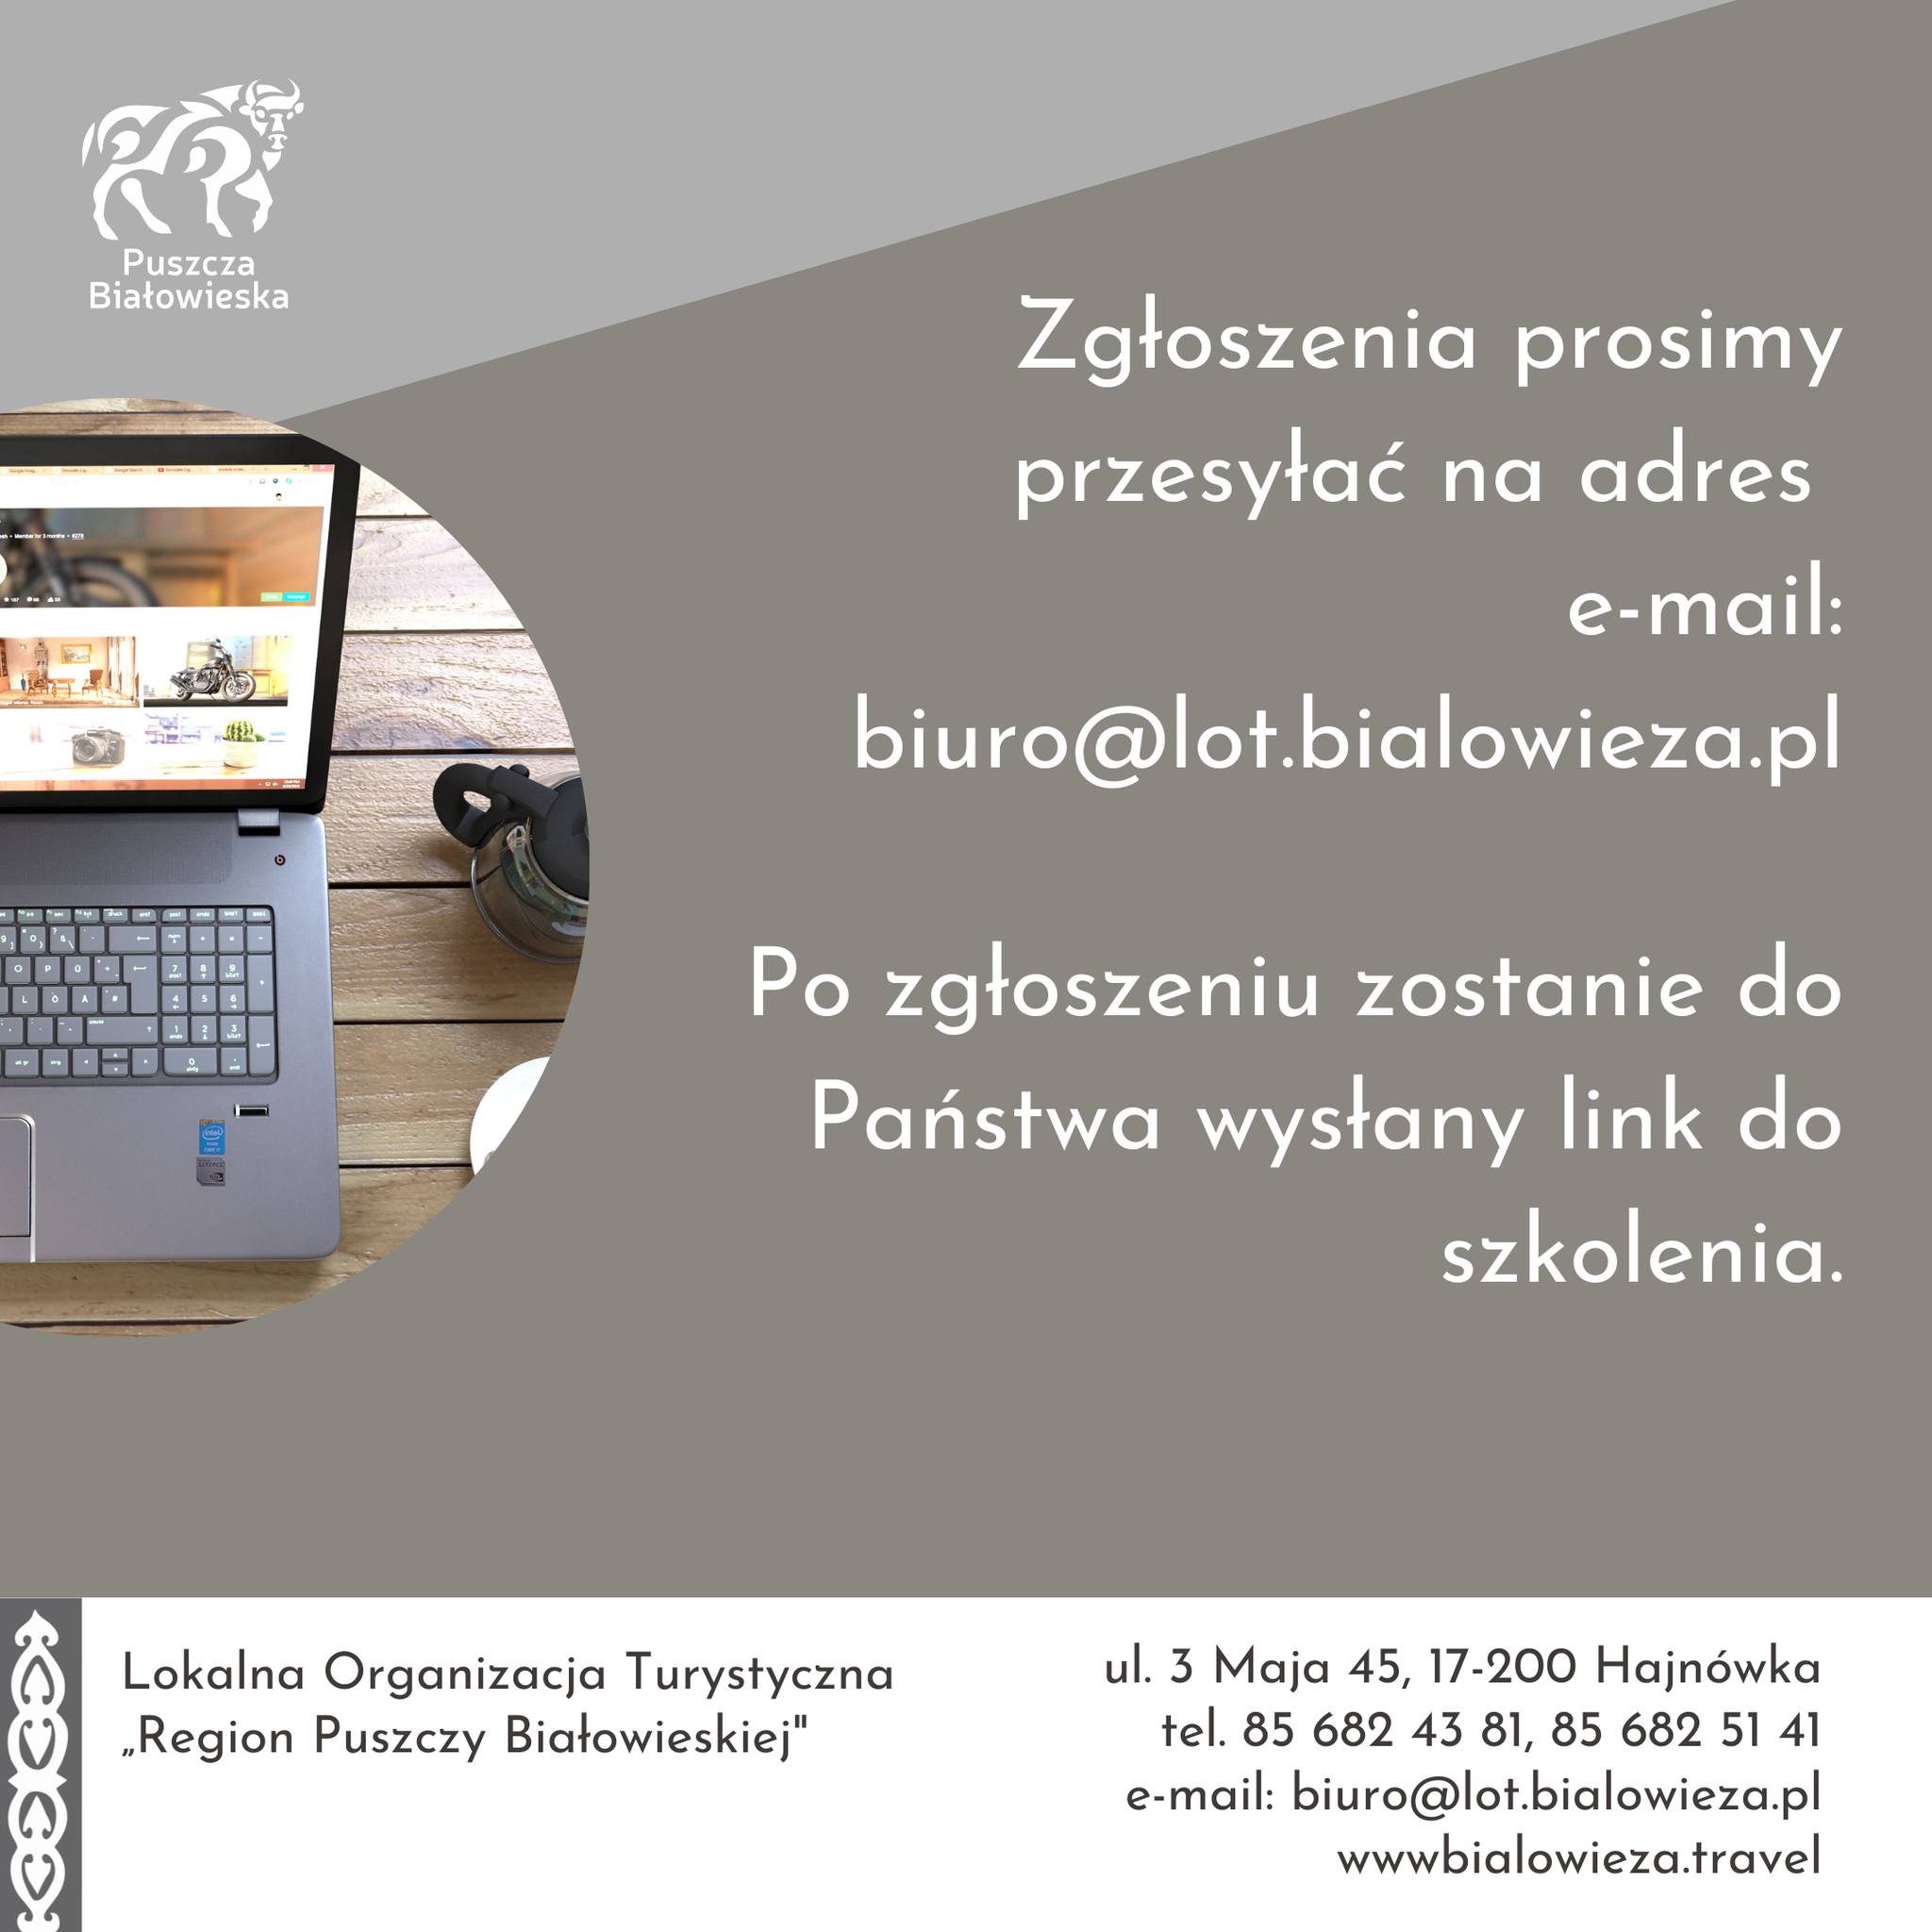 Zgłoszenia prosimy przesyłać na adres e-mail: biuro@lot.bialowieza.pl, po zgloszeniu zostanie do Państwa wysłany link do szkolenia.